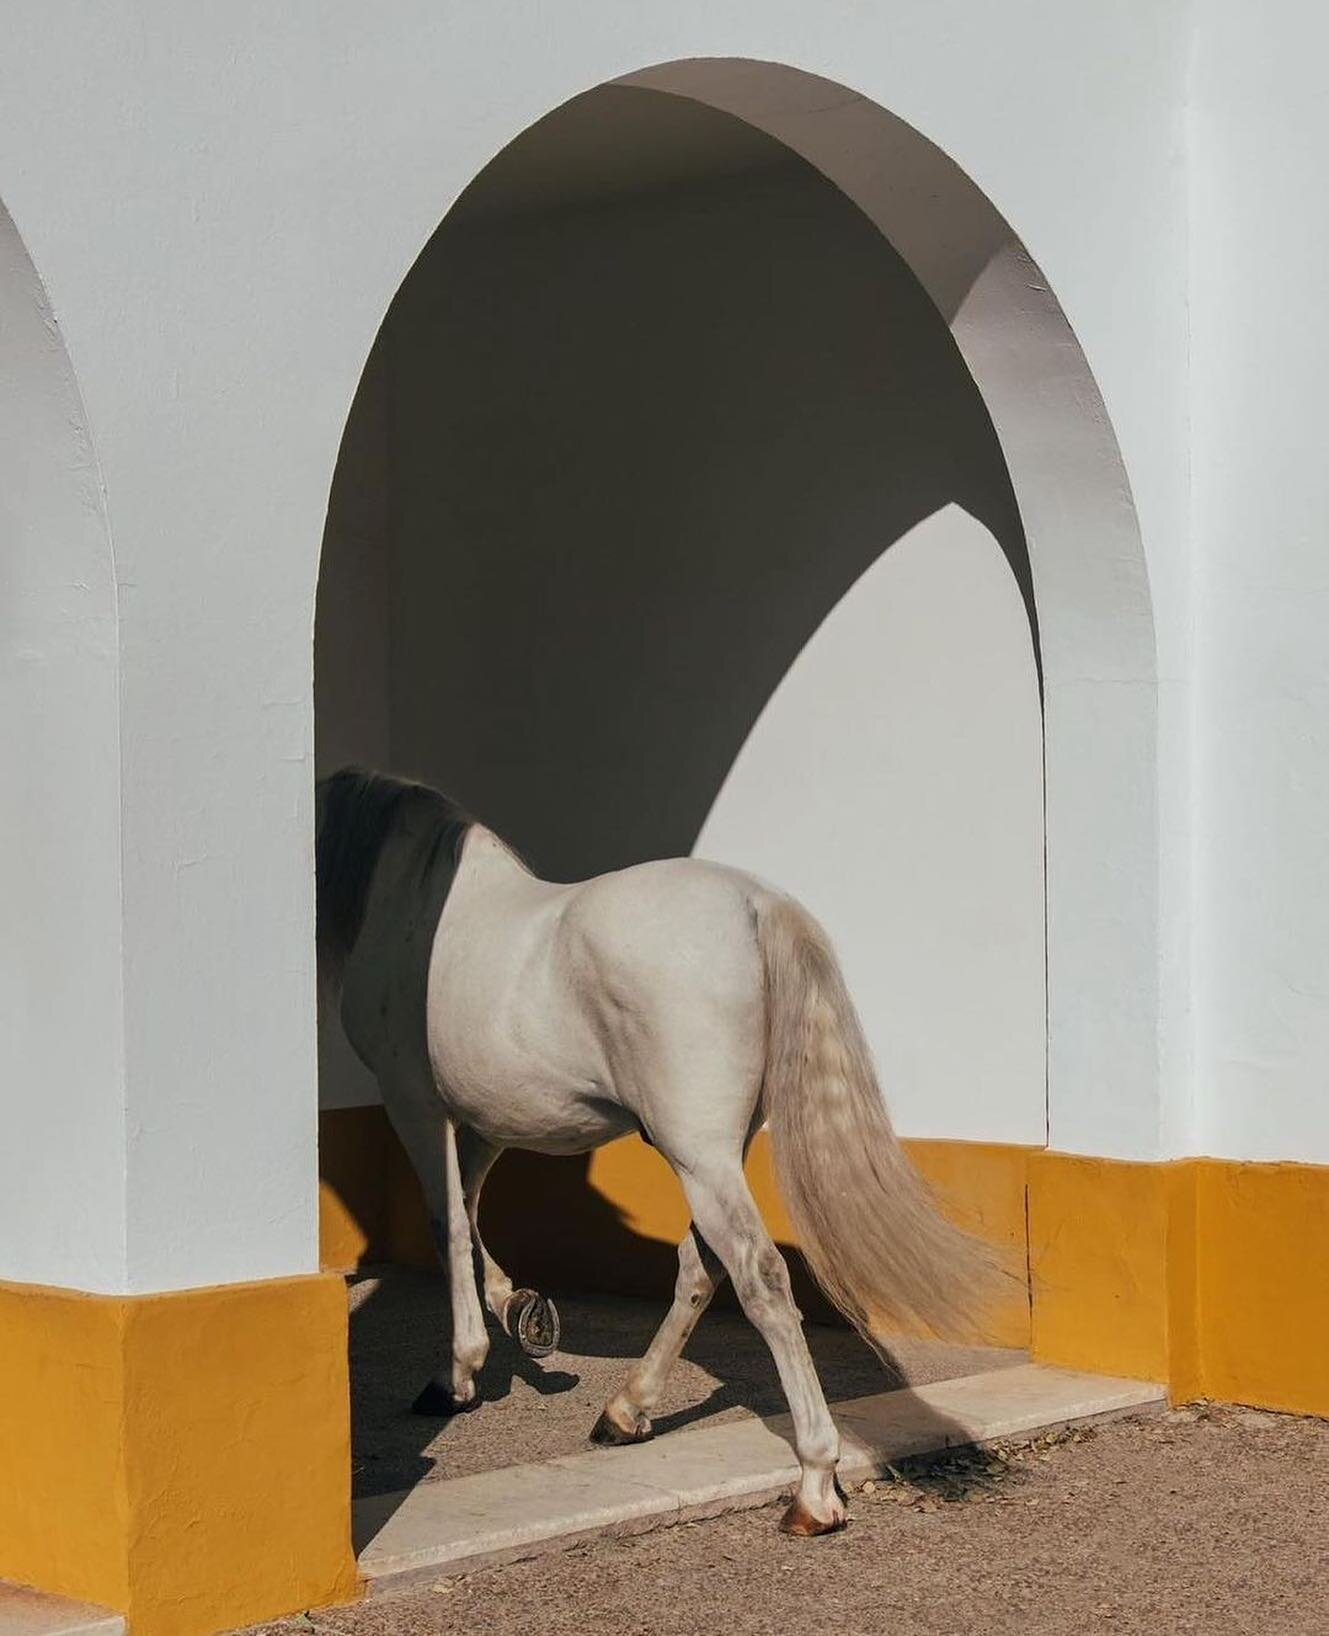 &Agrave; l&rsquo;&eacute;cole royale andalouse d&rsquo;art &eacute;questre avec @clementevb 

📷 @clementevb 

#horse #escuelaandaluza #andalousie #espa&ntilde;a #mood #ecoleandalouseartequestre #travelphotography #andalucia #spain #voyagevoyagemagaz